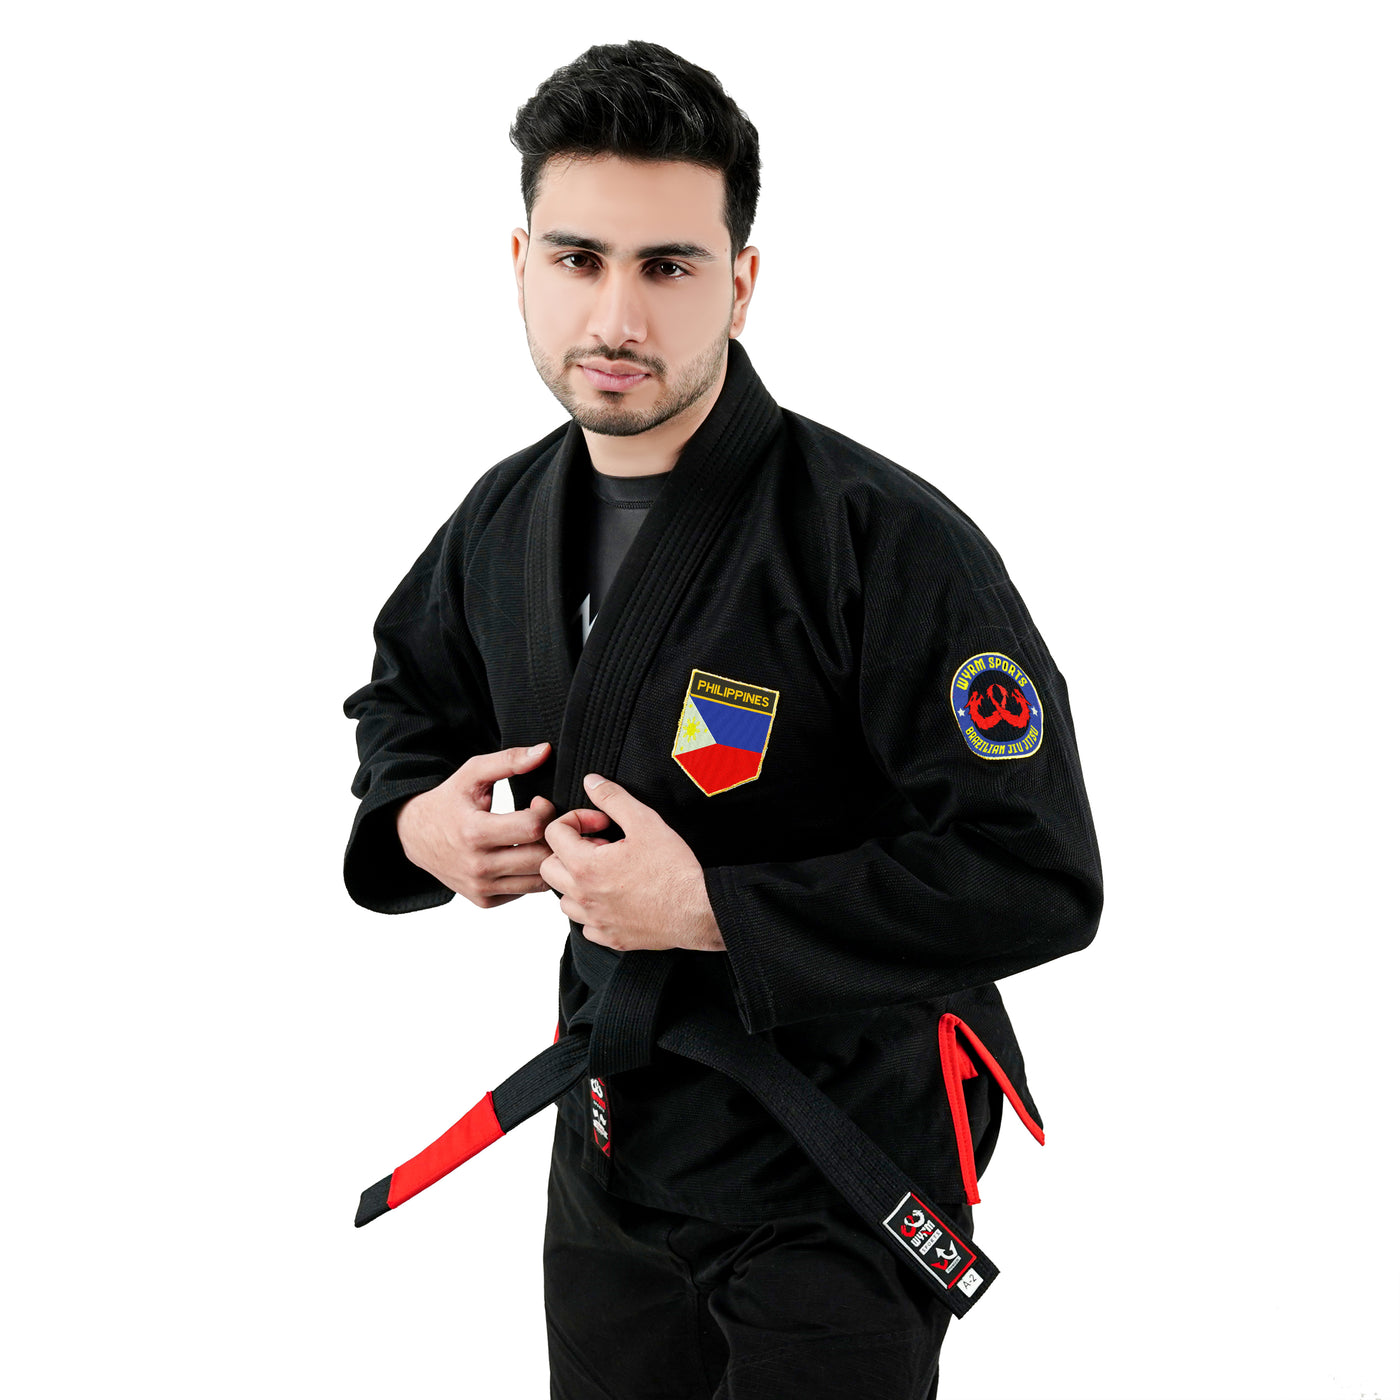 Filipino Black Brazilian Jiu Jitsu Gi With Built-in Rash Guard